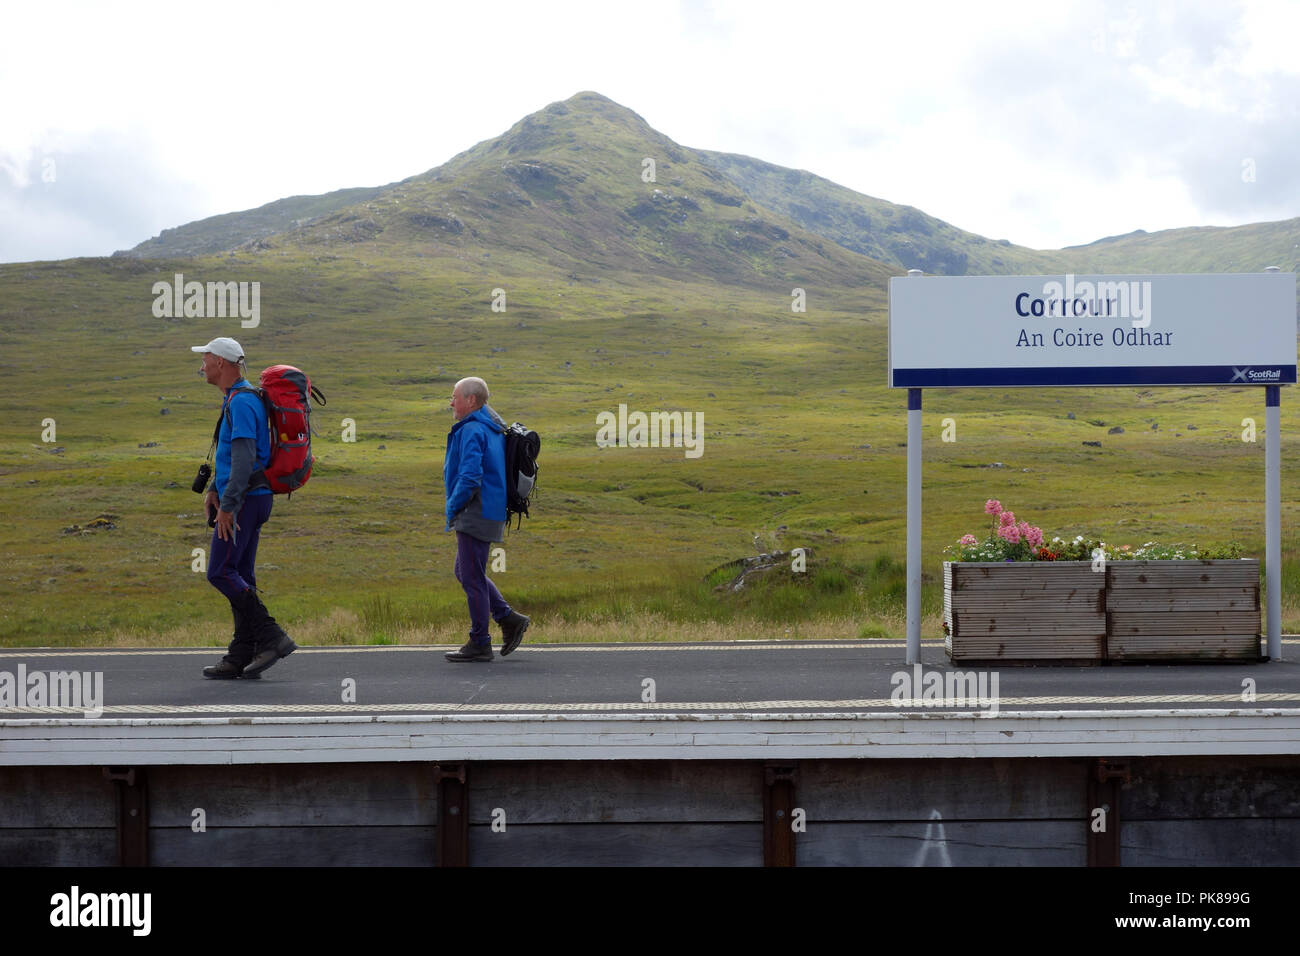 Deux hommes marchant à Corrour (Une Coire Odhar) Gare et la montagne Corbett Leum Uilleim écossais dans les Highlands, Ecosse, Royaume-Uni. Banque D'Images